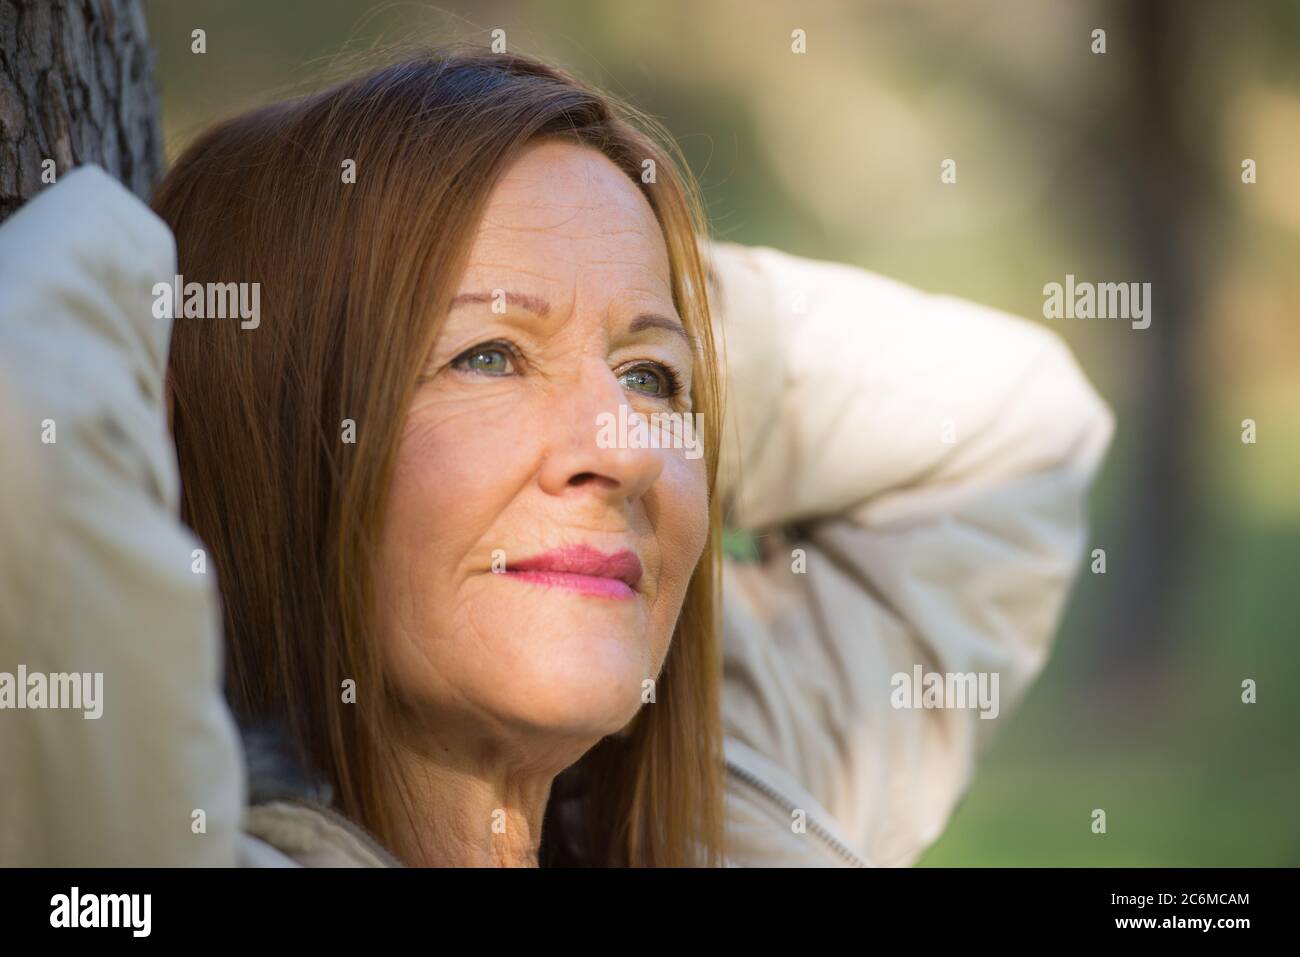 Portrait Attraktive reife Frau mit langen Haaren posiert glücklich entspannt, nachdenklich und zuversichtlich im Freien im Park, freundlich lächelnd. Stockfoto